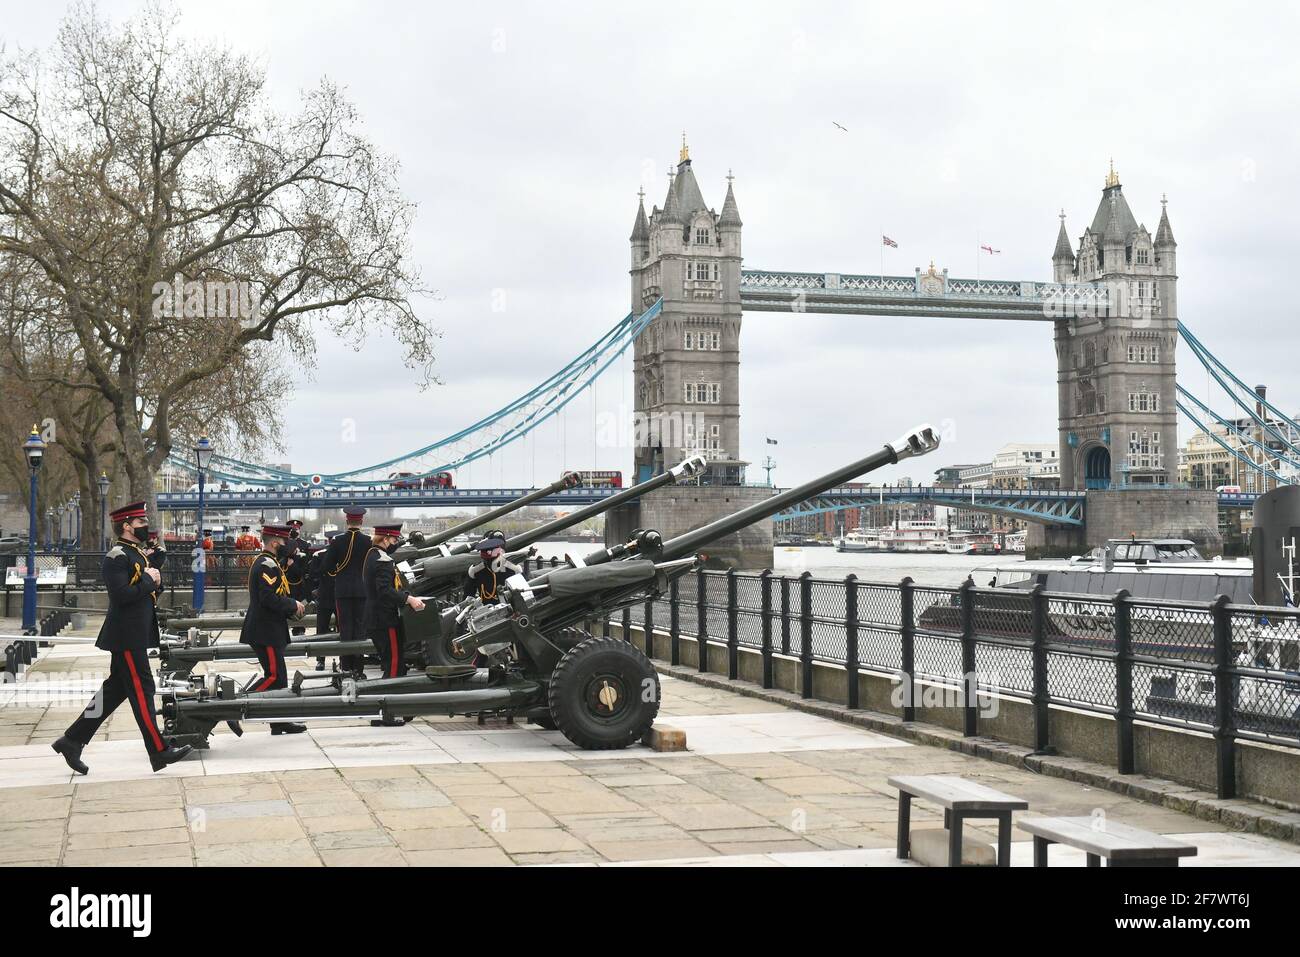 Les membres de l'honorable Artillerie Company se préparent à tirer un hommage de 41 coups de feu du quai de la Tour de Londres, pour souligner la mort du duc d'Édimbourg. Date de la photo: Samedi 10 avril 2021. Banque D'Images